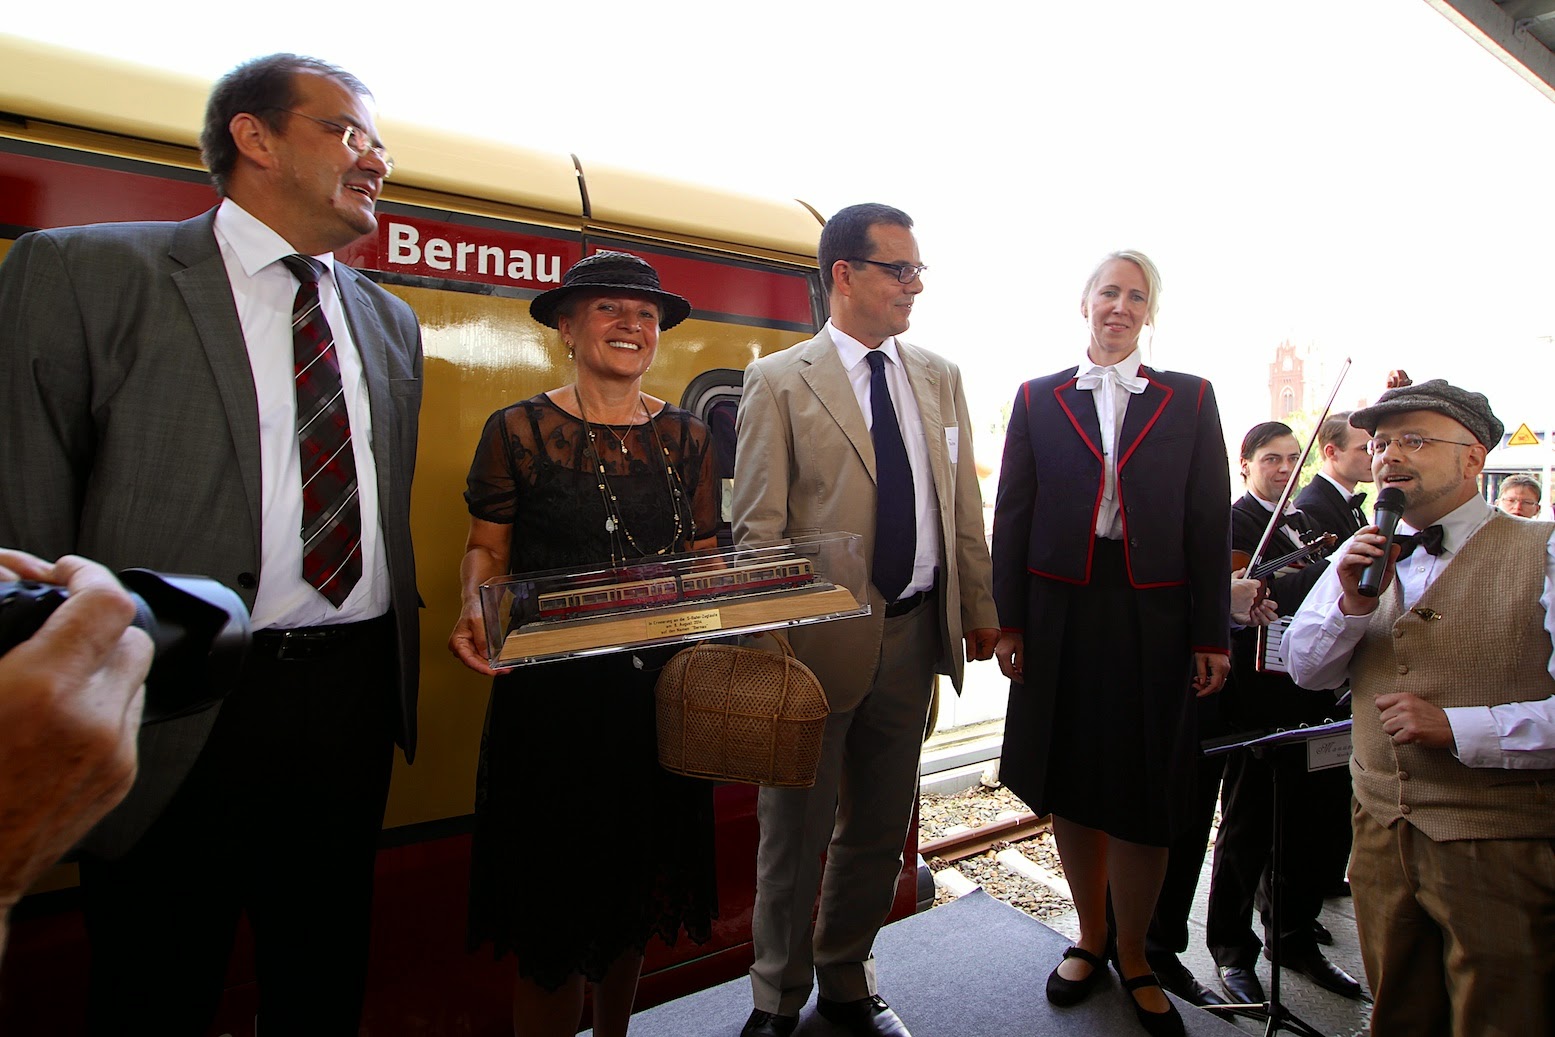 Moin, heute vor 92 Jahren fuhr die erste S-Bahn nach Bernau